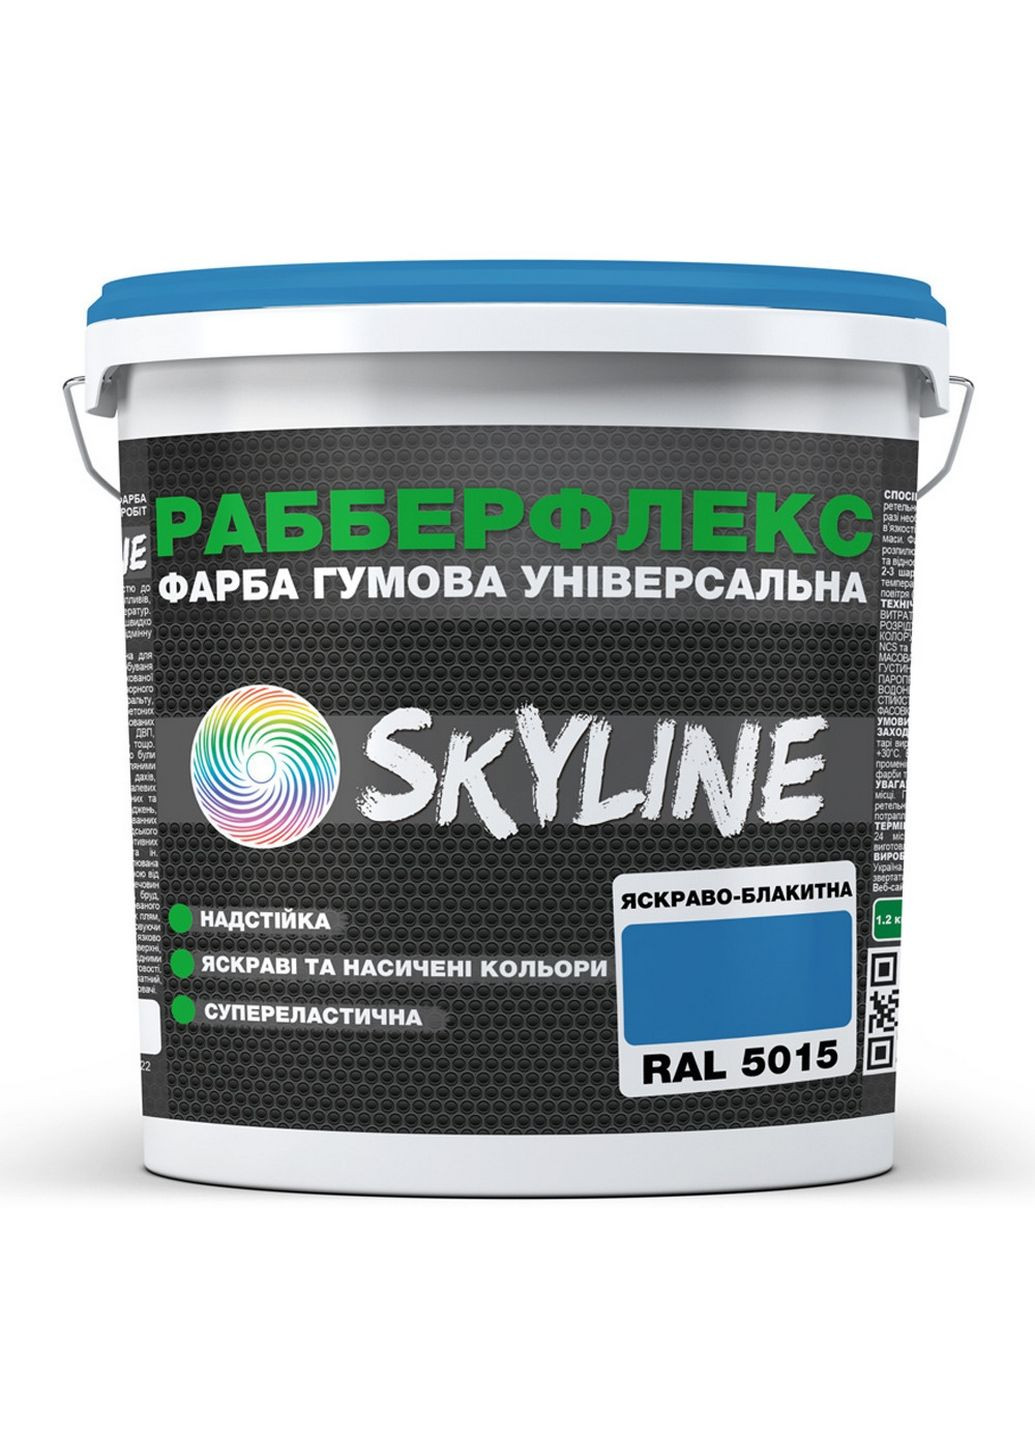 Надстійка фарба гумова супереластична «РабберФлекс» 6 кг SkyLine (289462252)